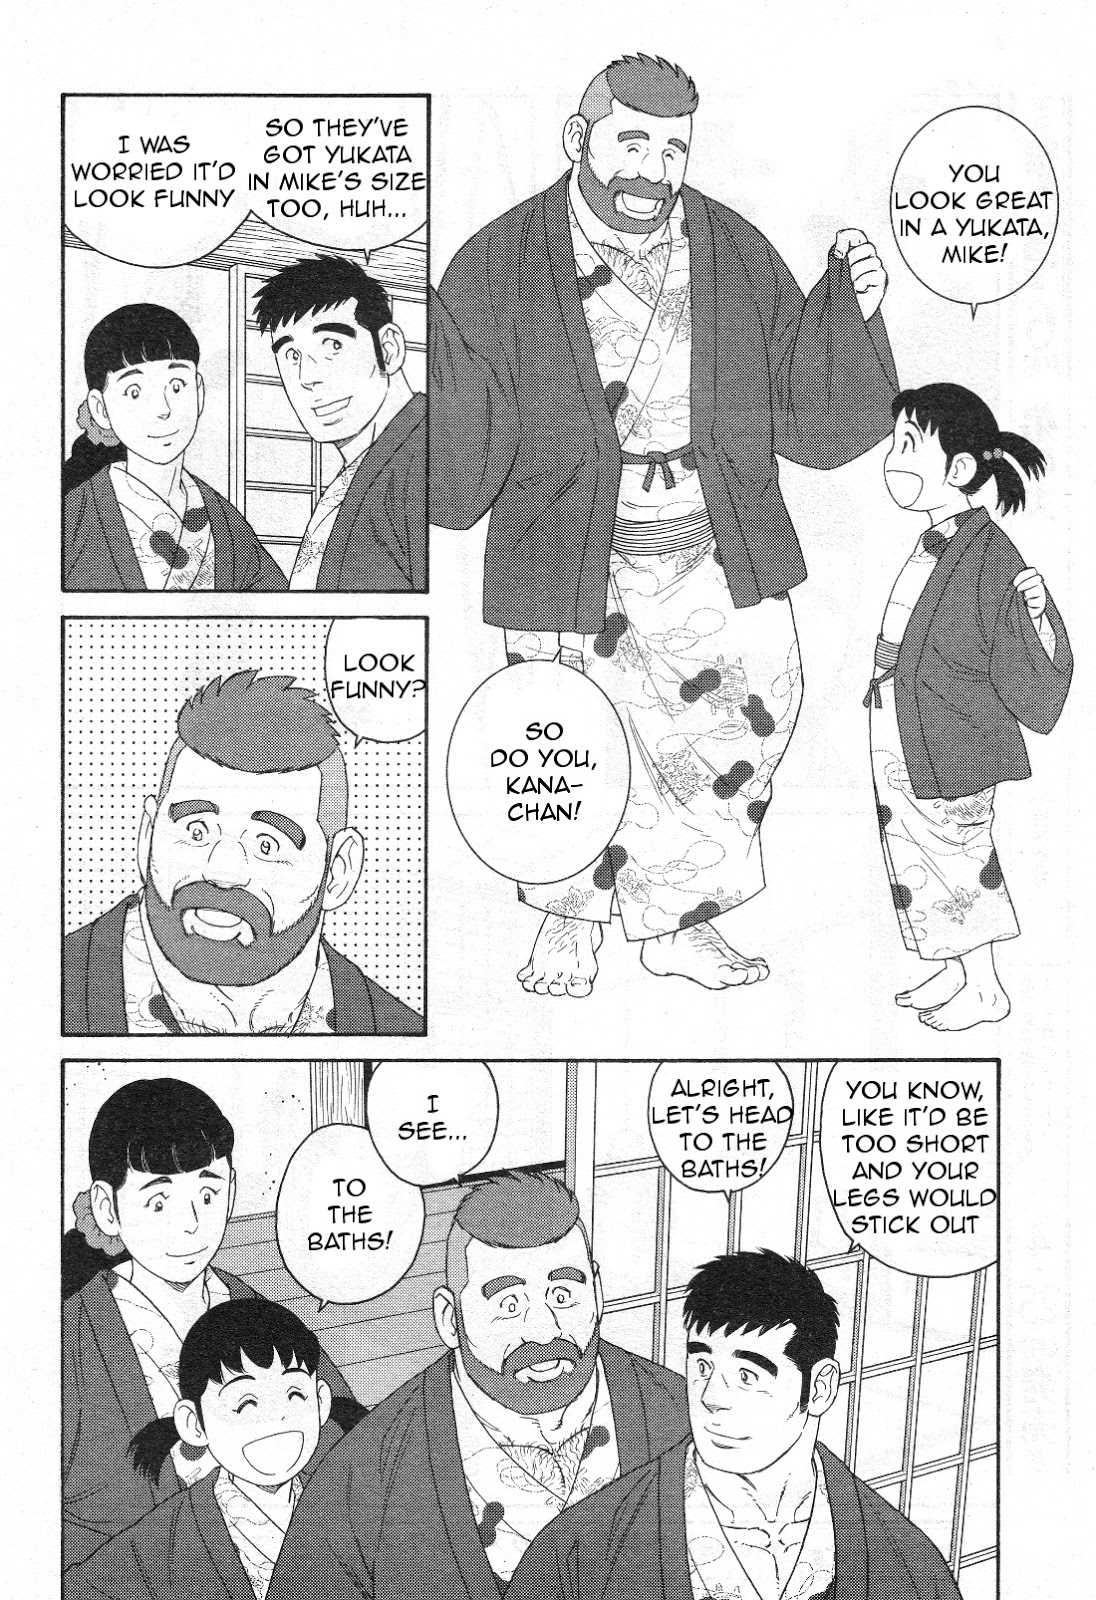 田亀源五郎のおすすめ漫画ランキングベスト5！初心者におすすめ順で紹介！ | ホンシェルジュ